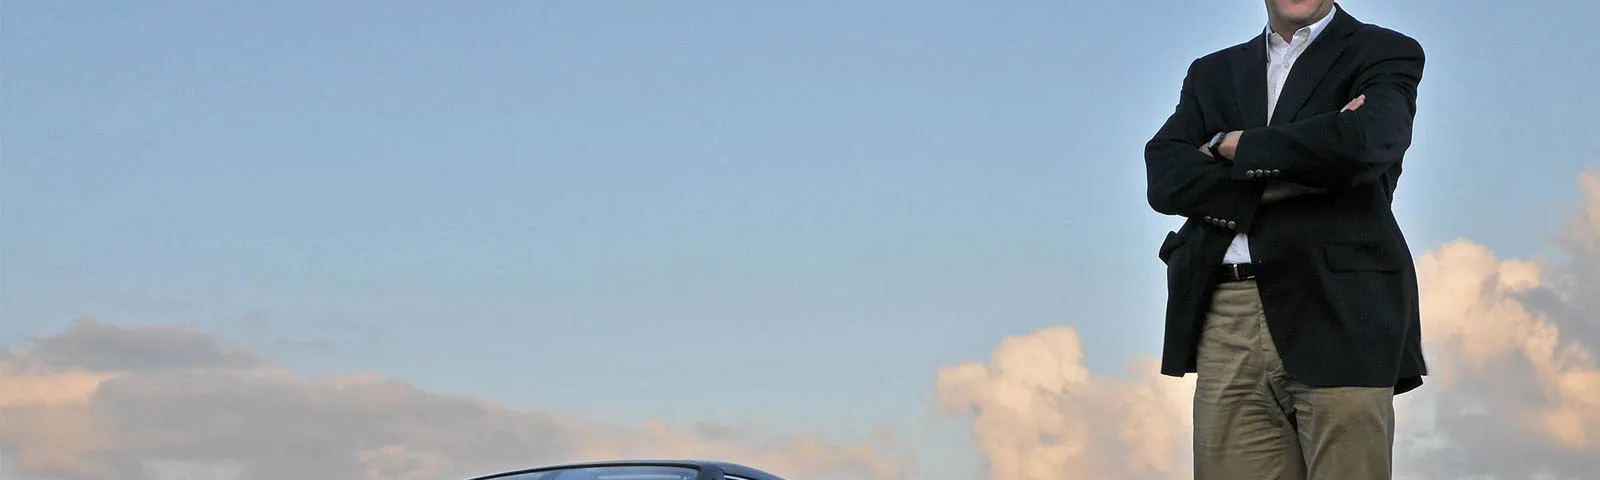 Imagen de Ian Cameron, diseñador de BMW y Rolls-Royce, con los brazos cruzados apoyado en el capó de un automóvil Rolls-Royce. El vehículo está estacionado con un cielo despejado al fondo durante lo que parece ser el atardecer o amanecer, dado el tono del cielo. La placa del vehículo es visible y muestra la inscripción ‘HX08 BHA’.